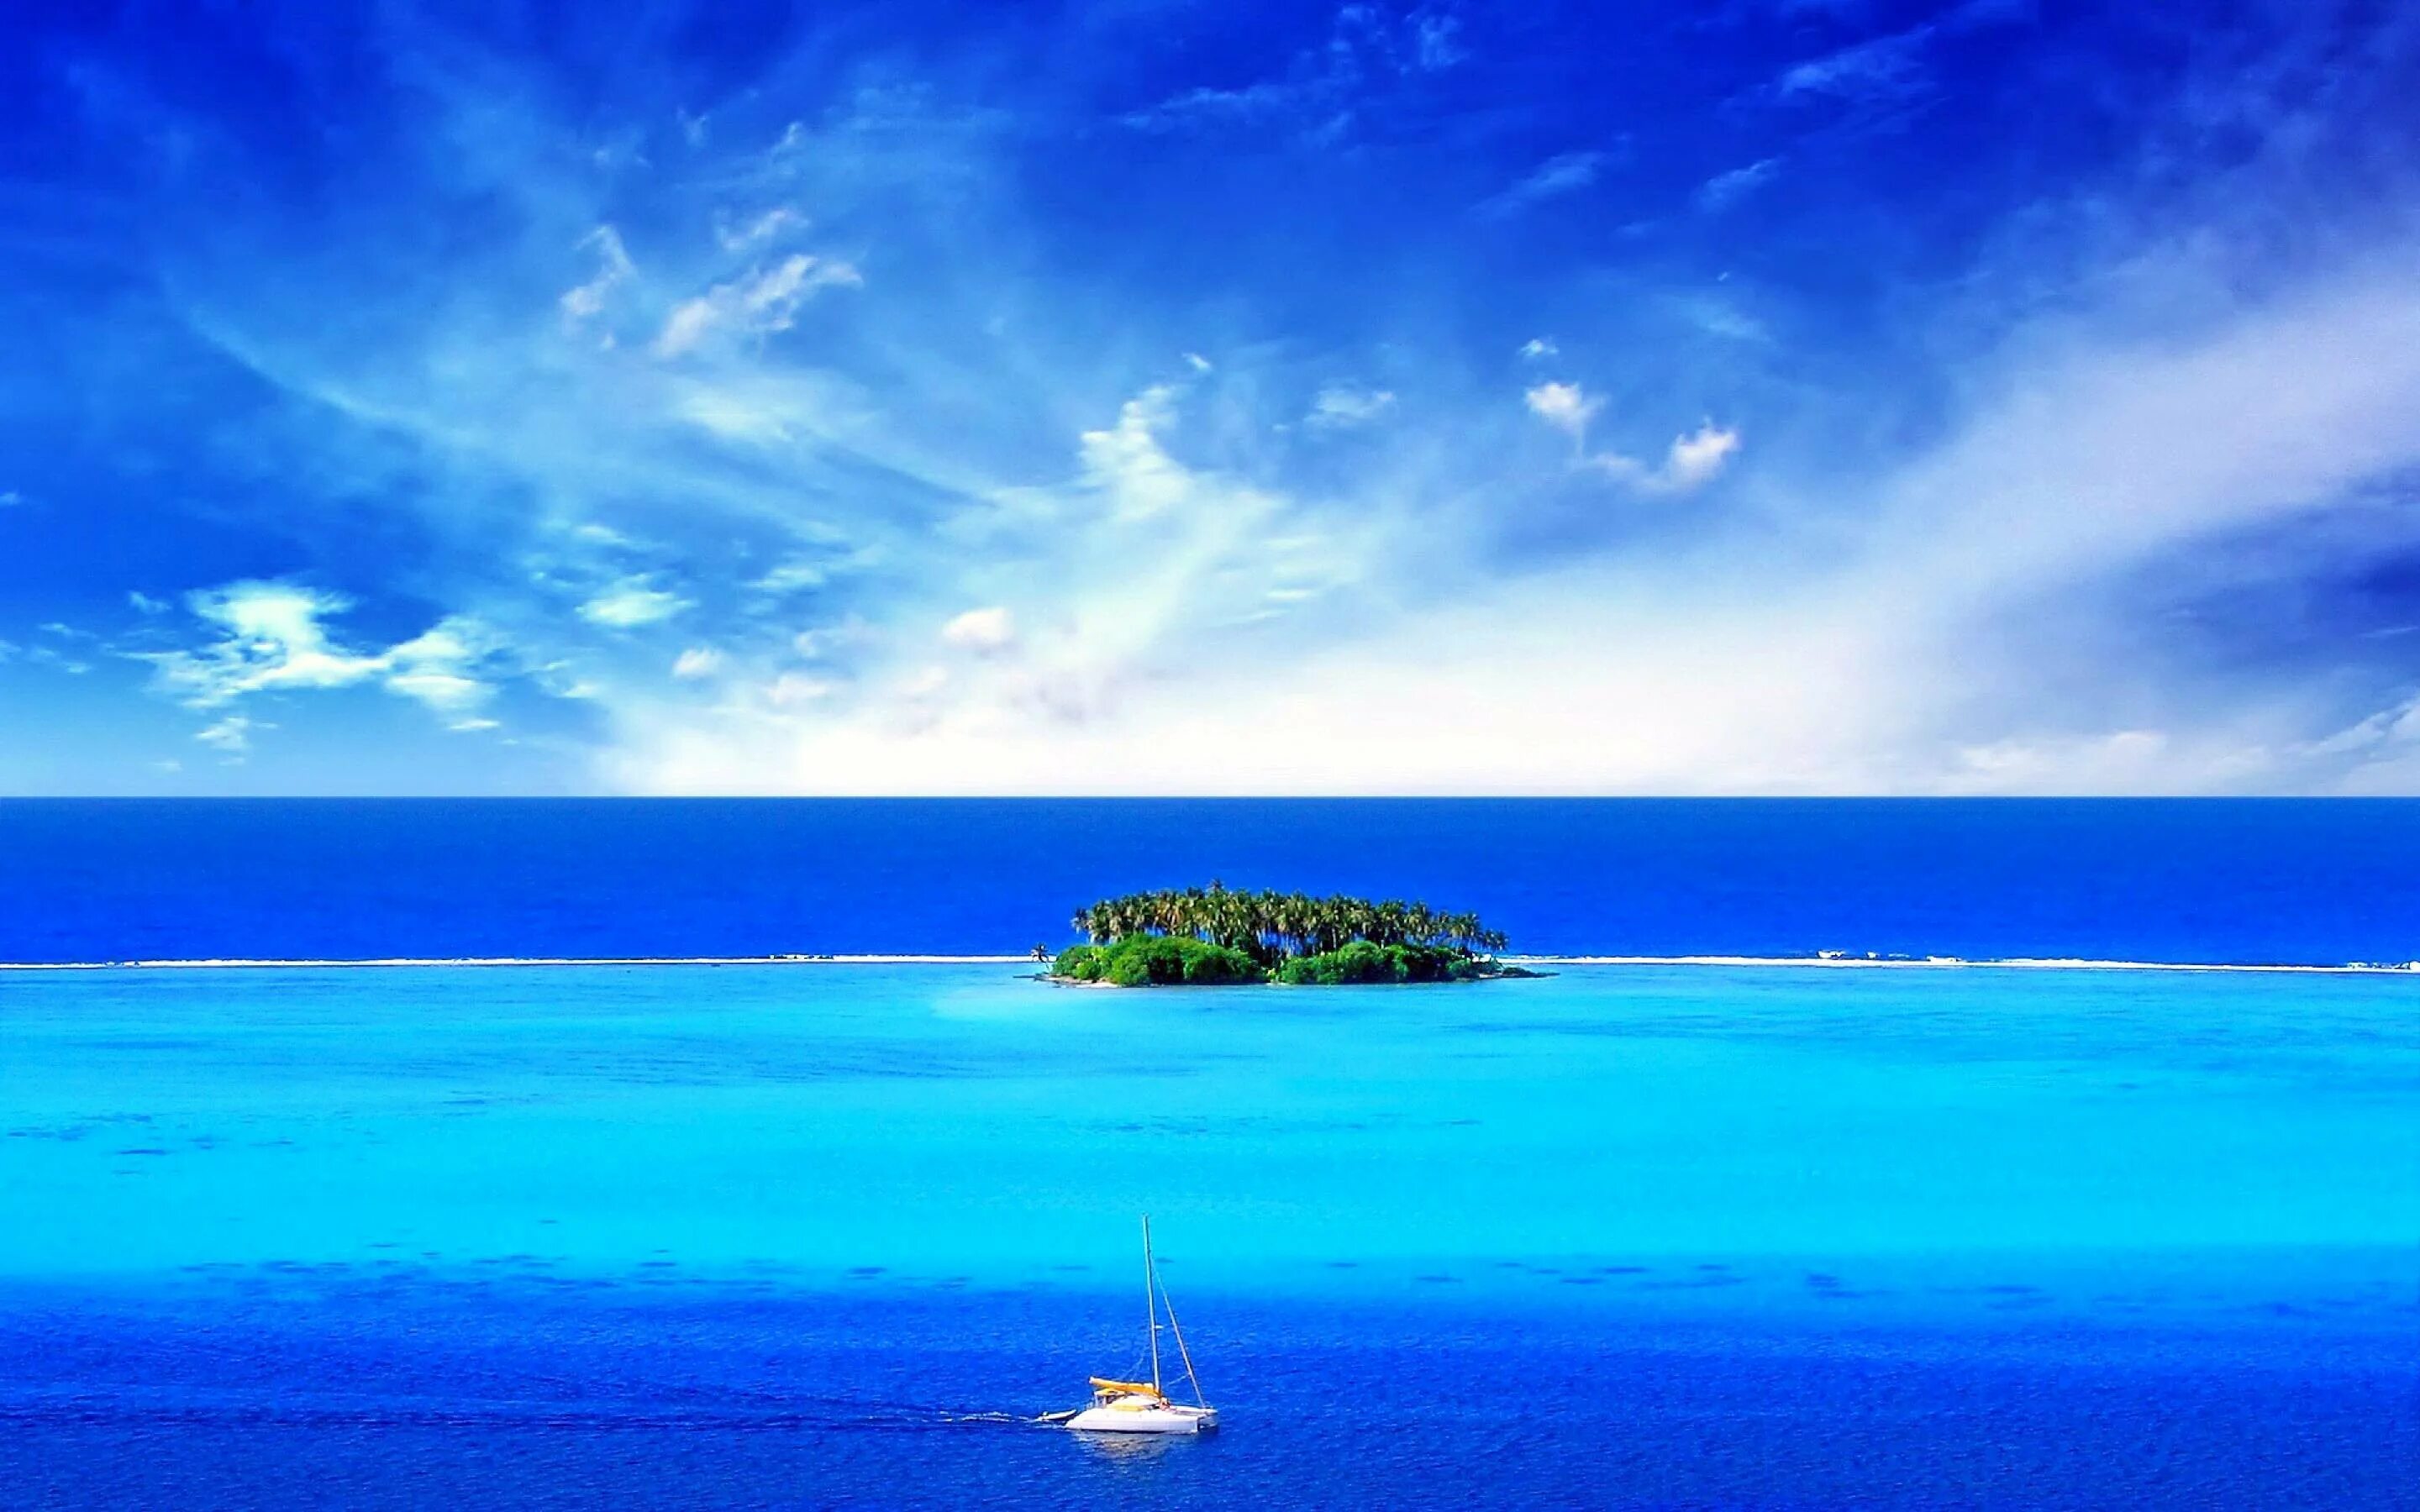 Обои на полный экран. Парадиз остров Карибского моря. Природа море. Красивое голубое море. Природа океан.